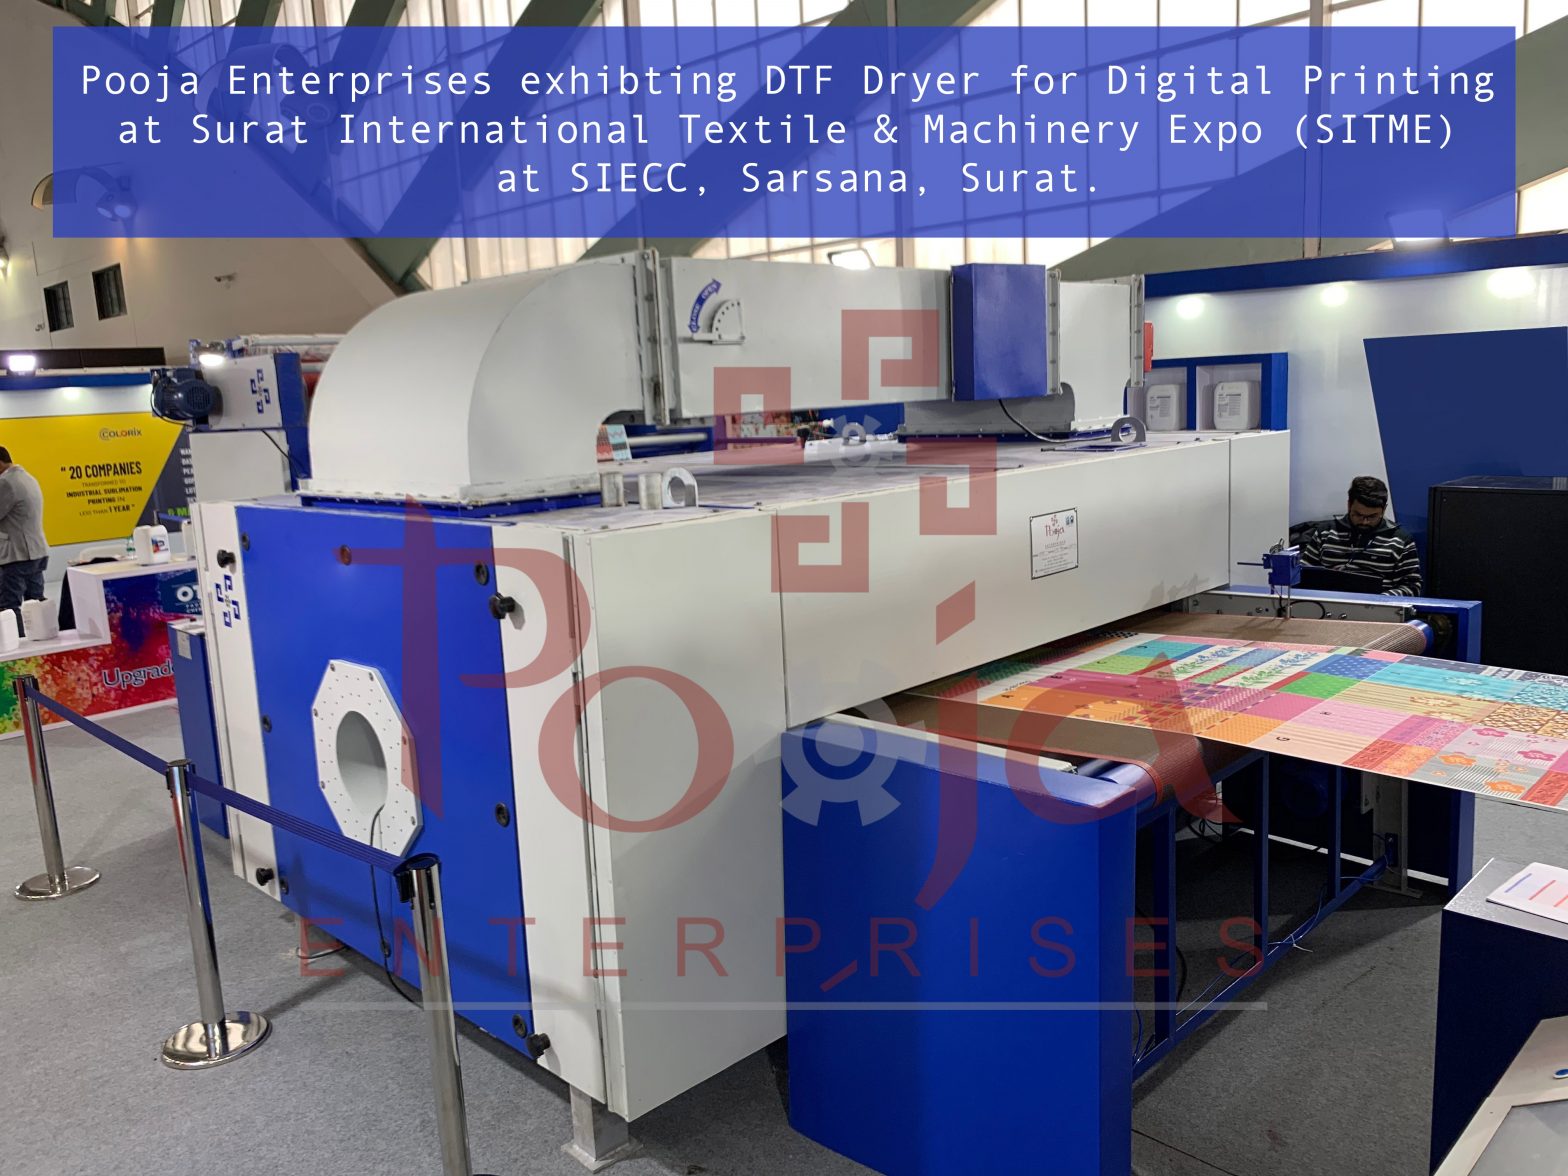 Dryer for DTF Digital Printing